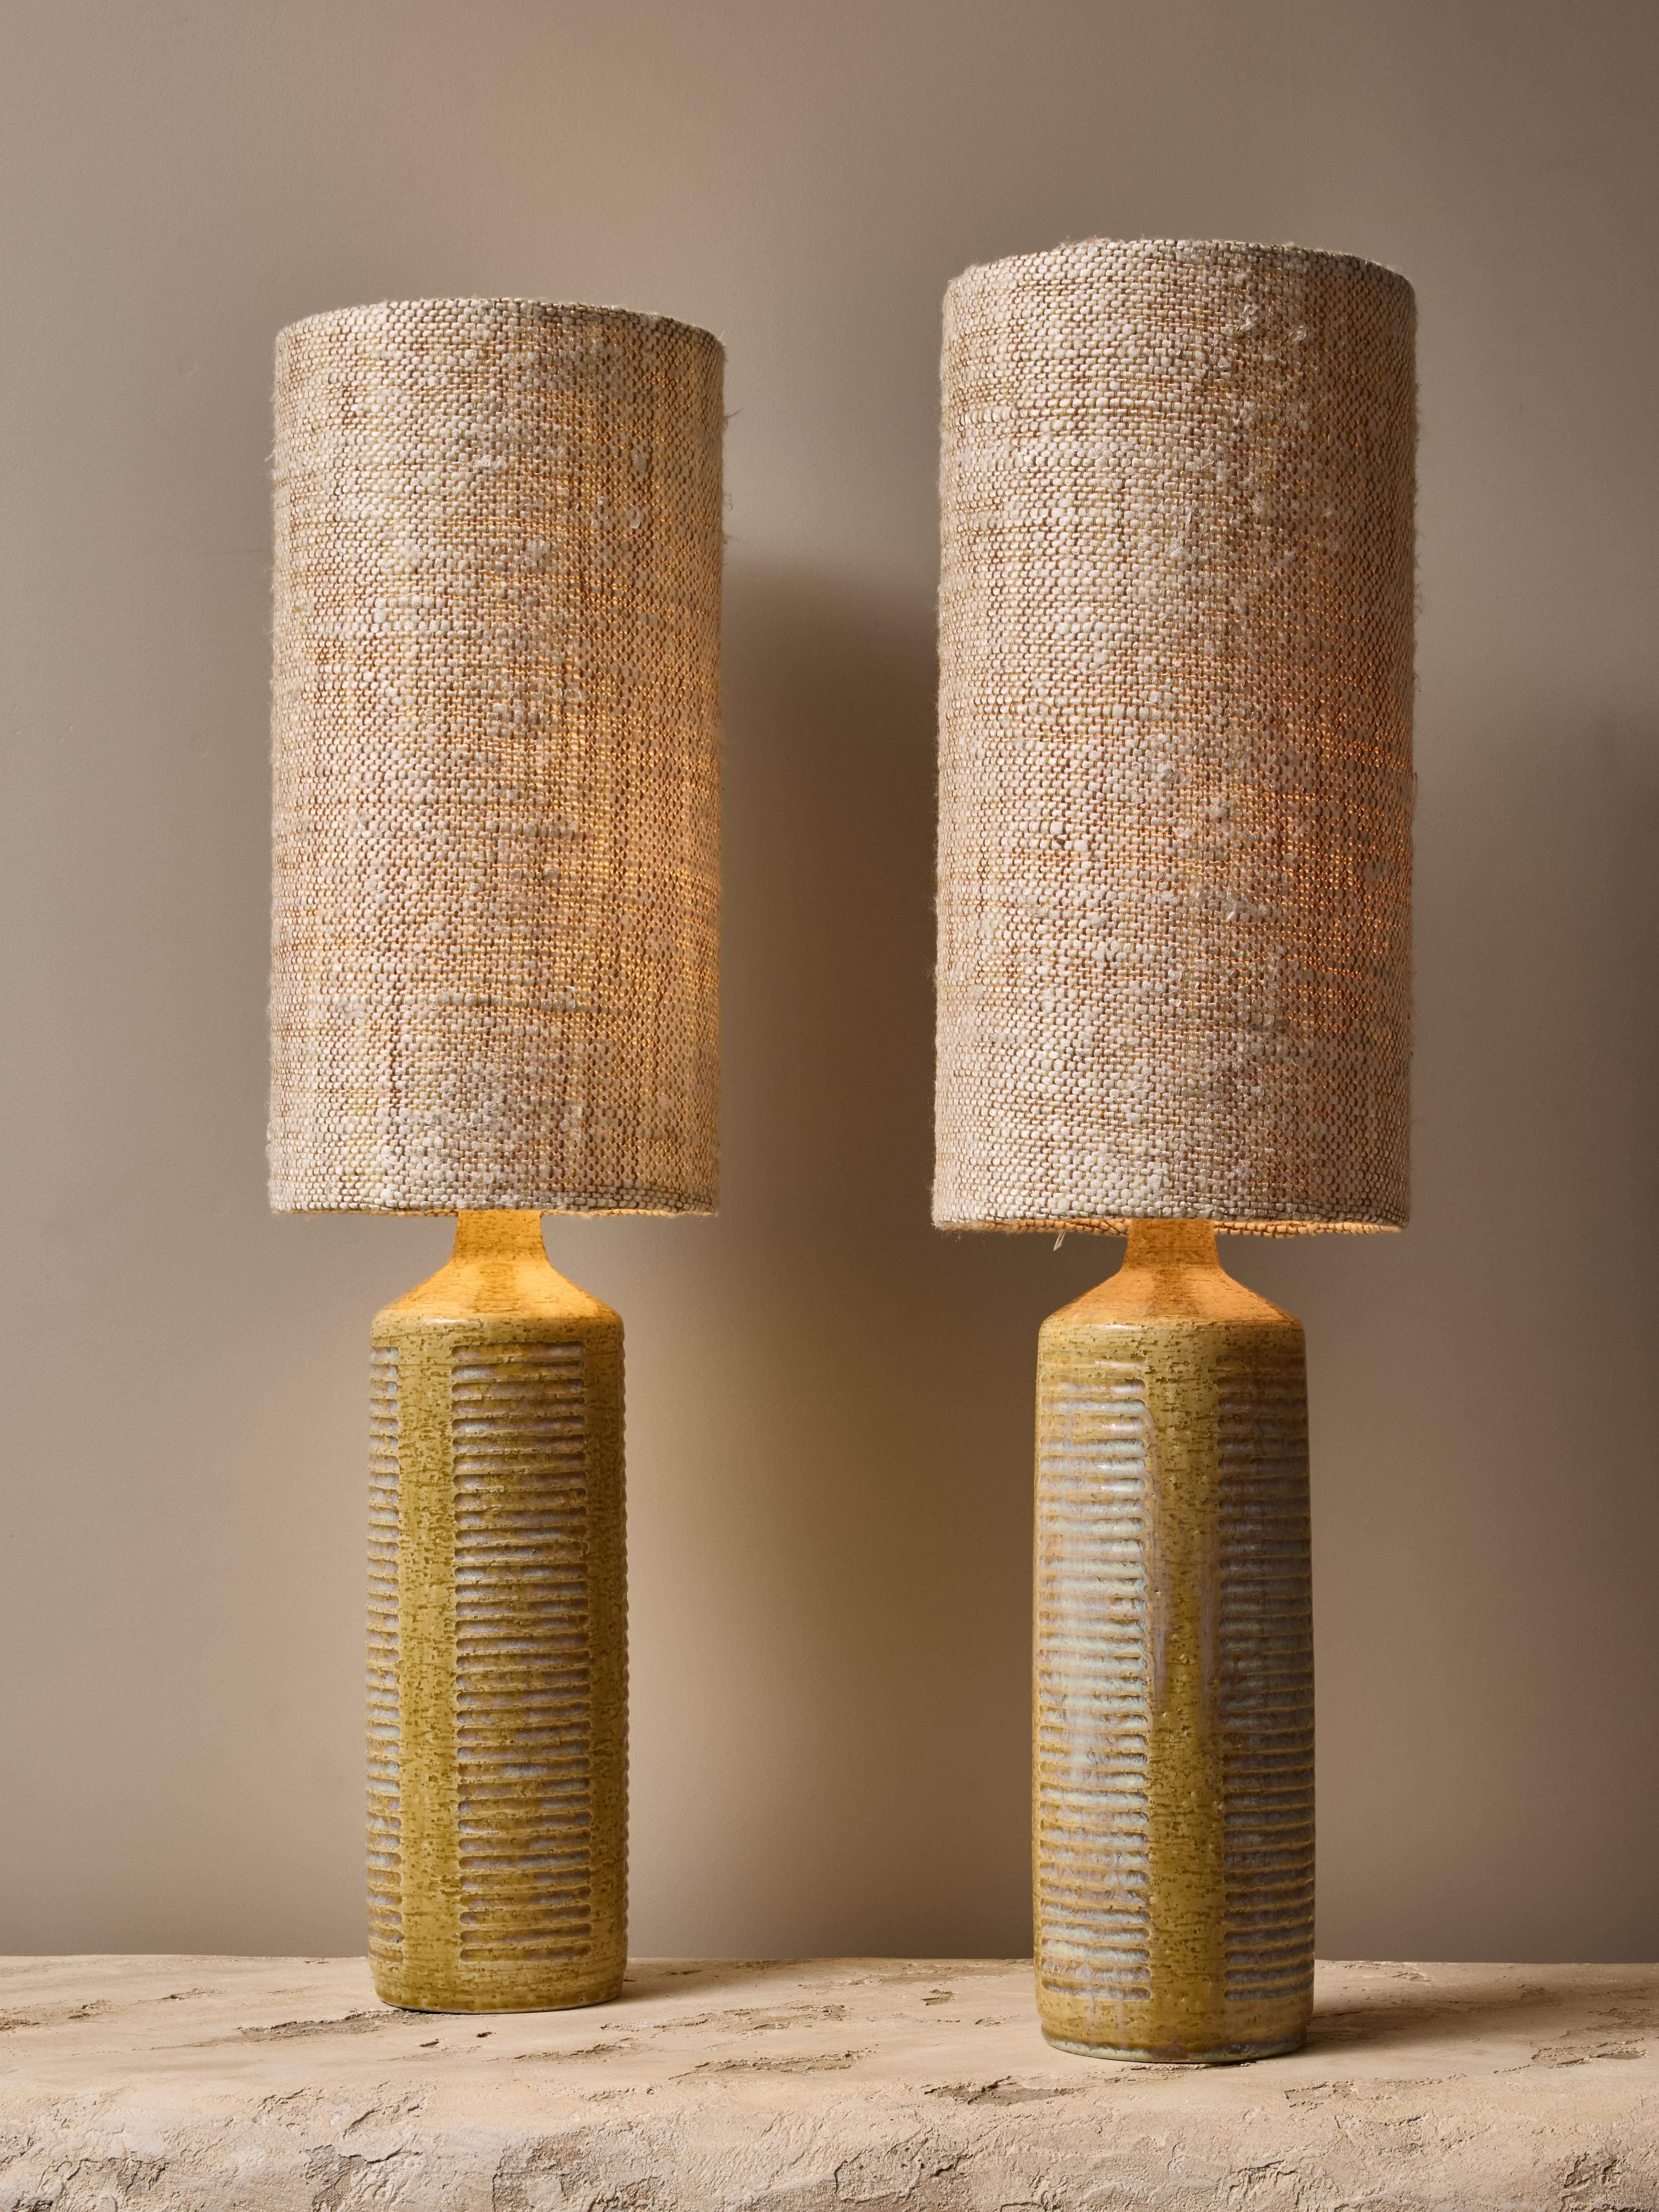 Paar Tischlampen Modell DL27 aus Keramik von dem dänischen Designer Per Linneman-Schmidt für die Manufaktur Palshus. Die Lampen sind mit grüner, strukturierter Glasur überzogen, die in einigen der horizontalen Rillen einen Hauch von Petrol